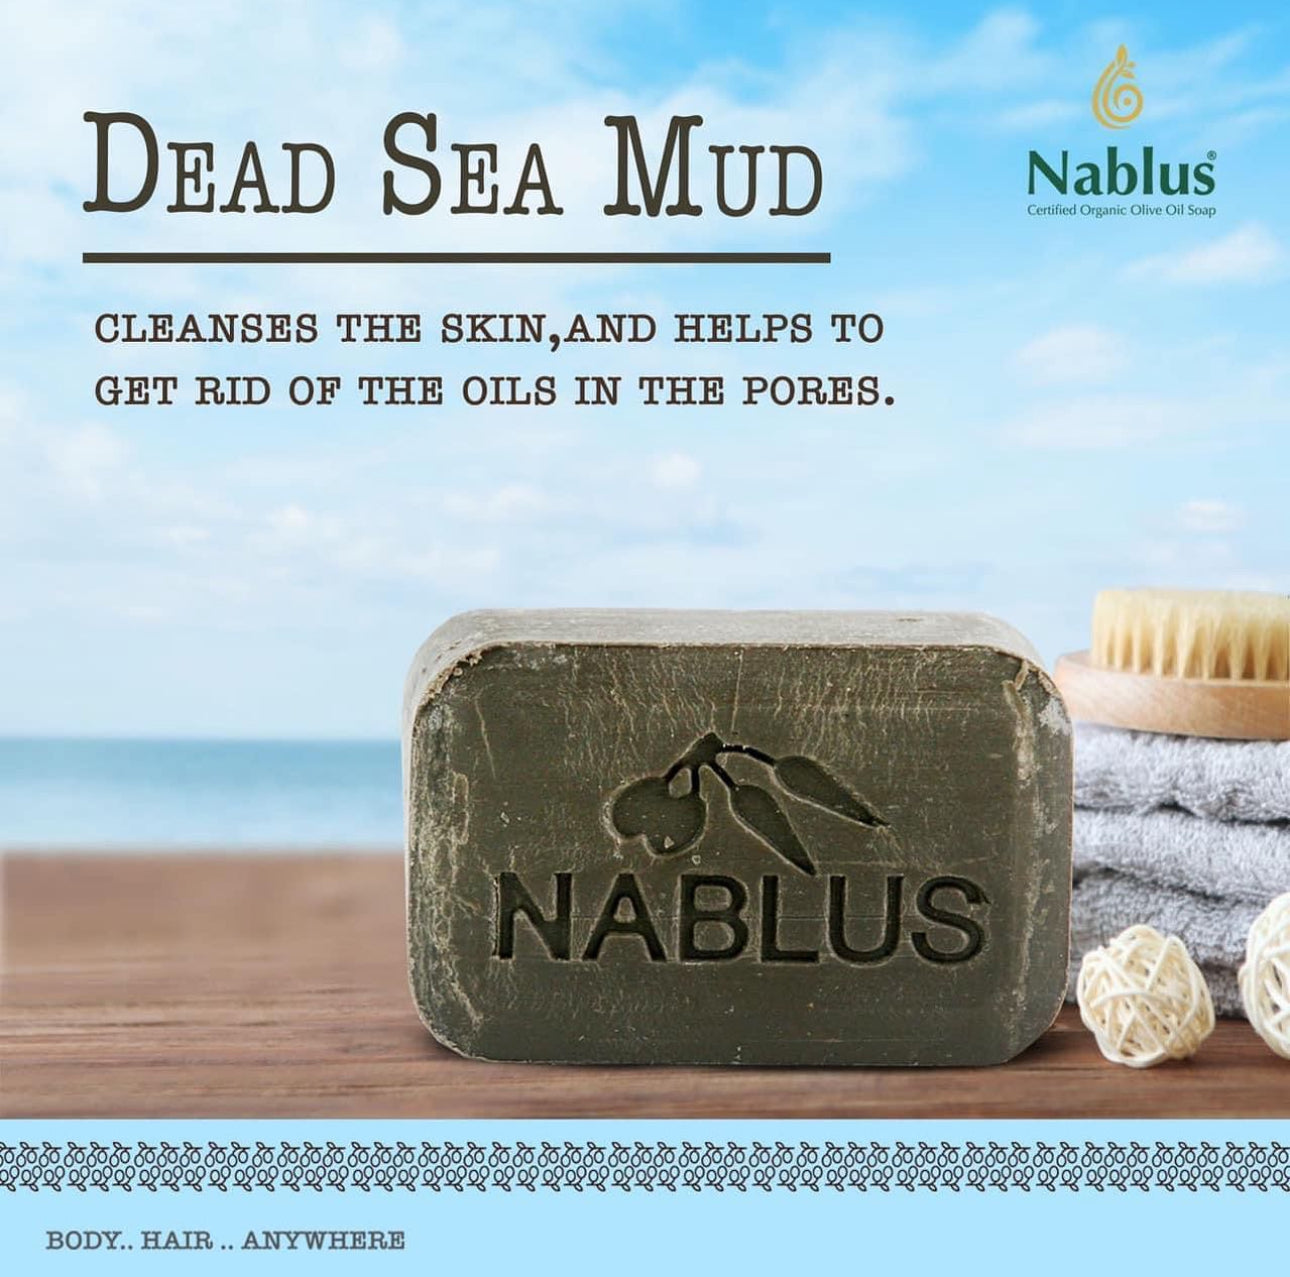 Organic Nablus Olive Oil Soap: Dead Sea